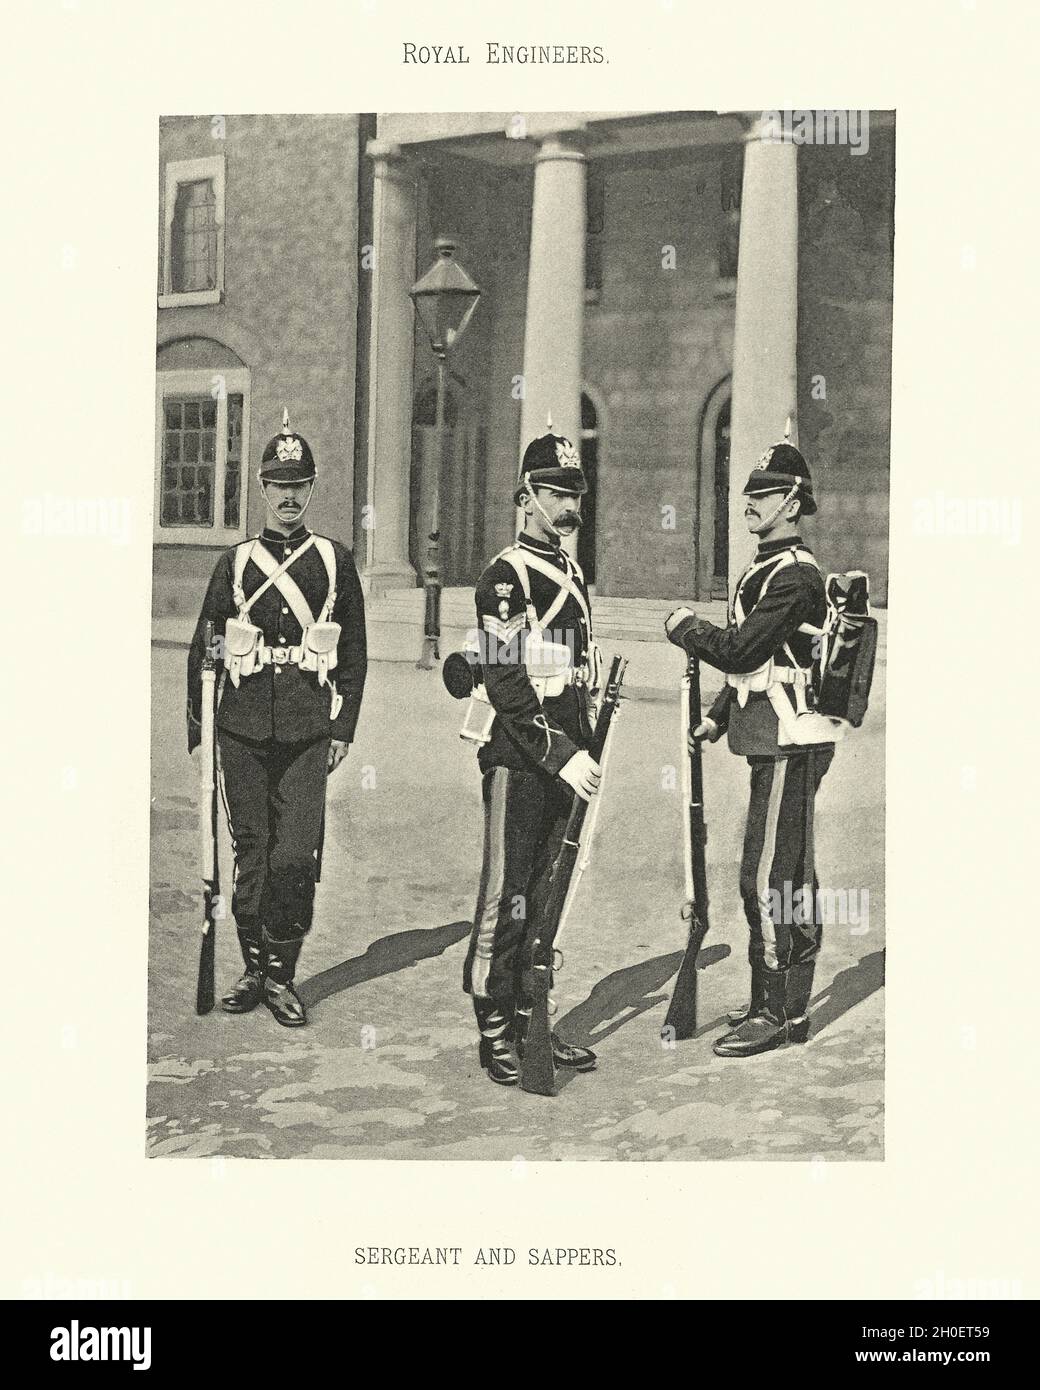 Photogrtaphe vintage de Sergent et de sapeurs, Royal Engineers de l'armée britannique, uniforme militaire, victorien du XIXe siècle Banque D'Images